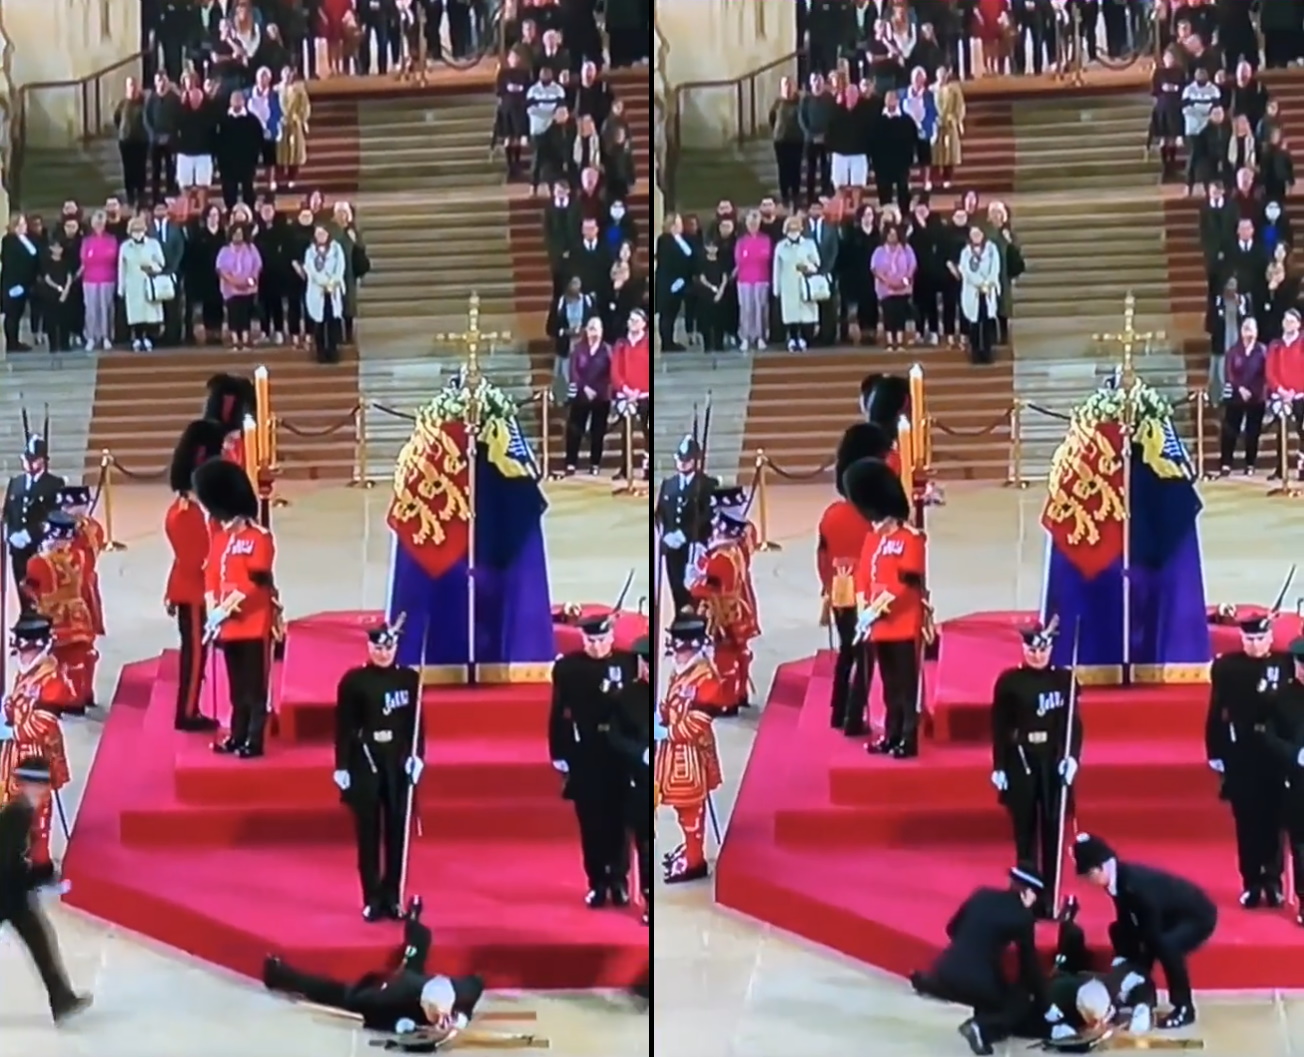 II. Erzsébet koporsóőre összeesett a ceremónia közben – videó